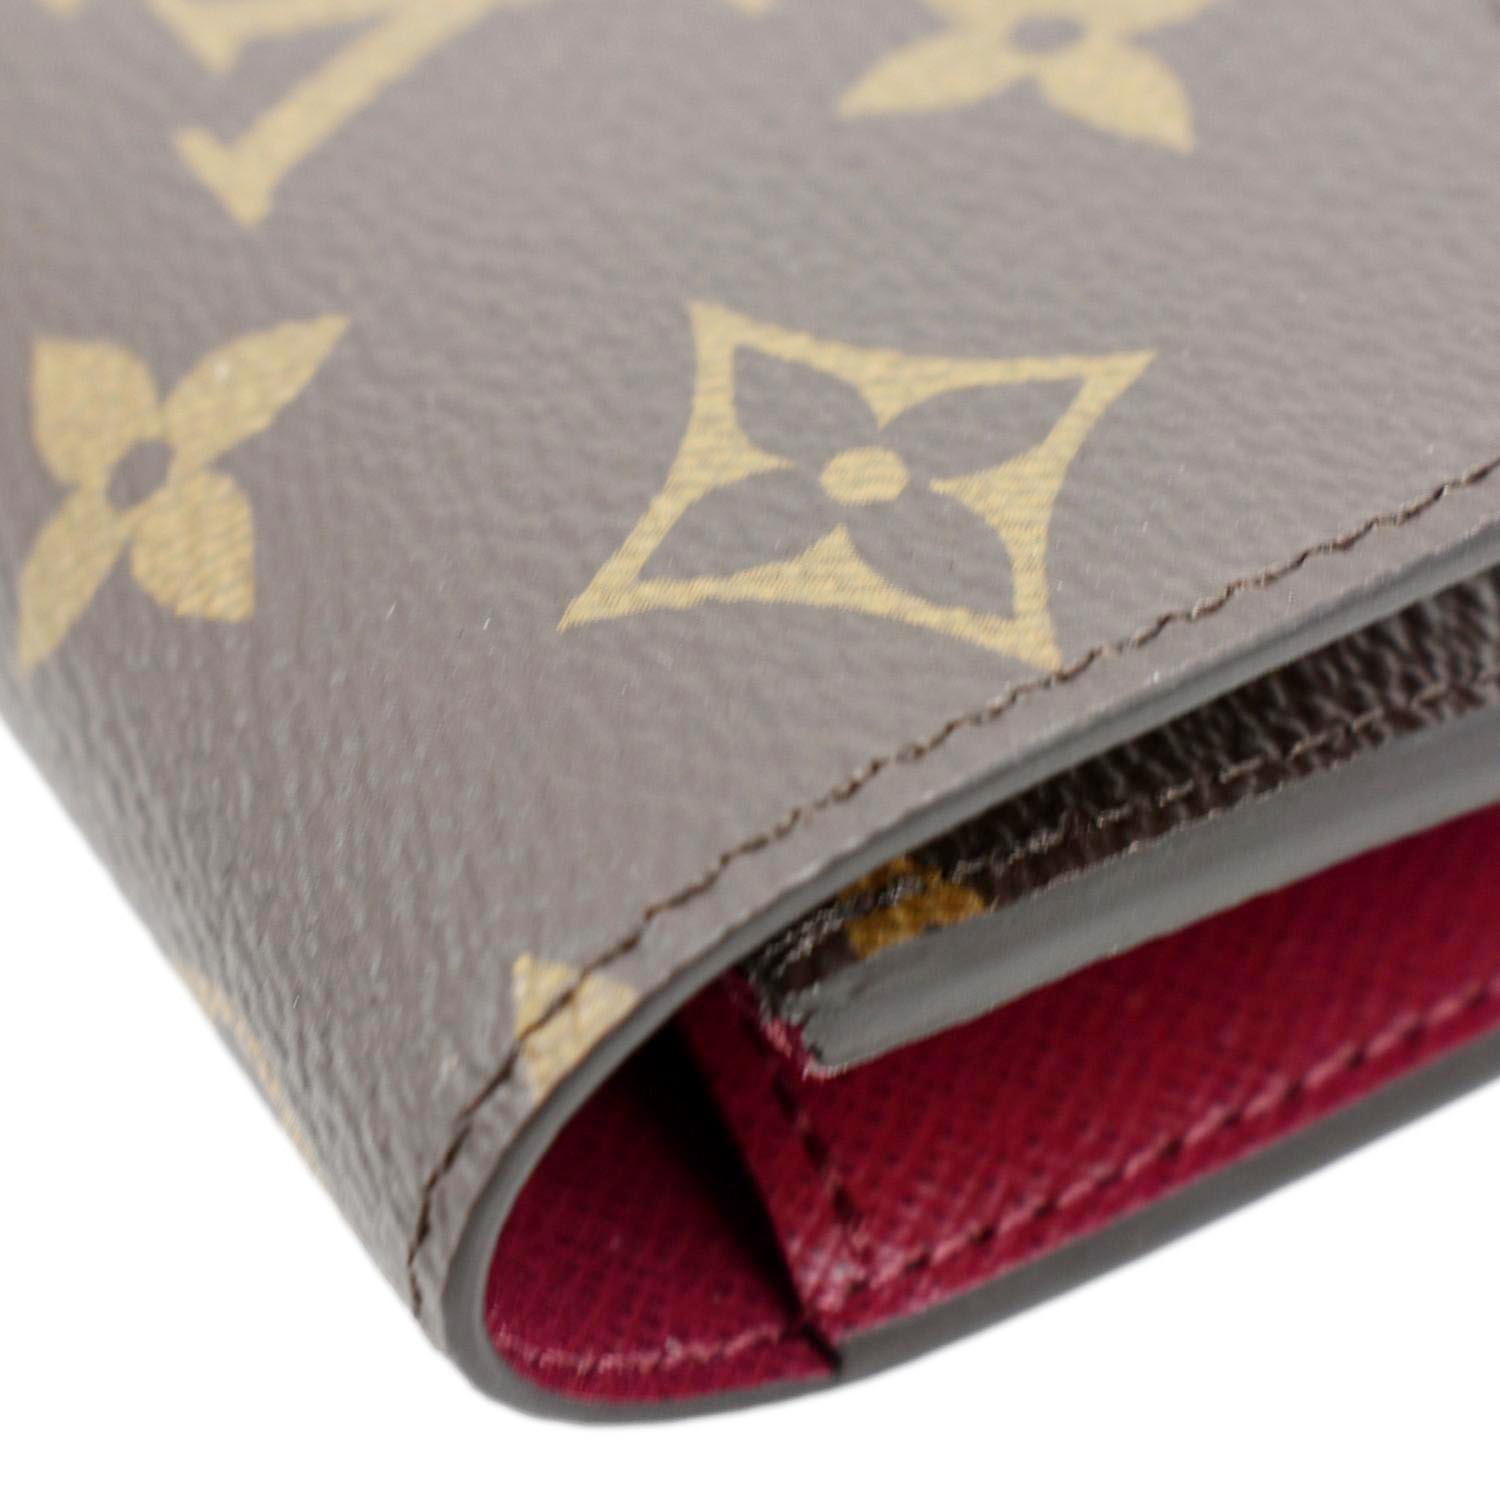 Authentic Louis Vuitton Wallet: Red; Emilie Monogram; Brown Canvas